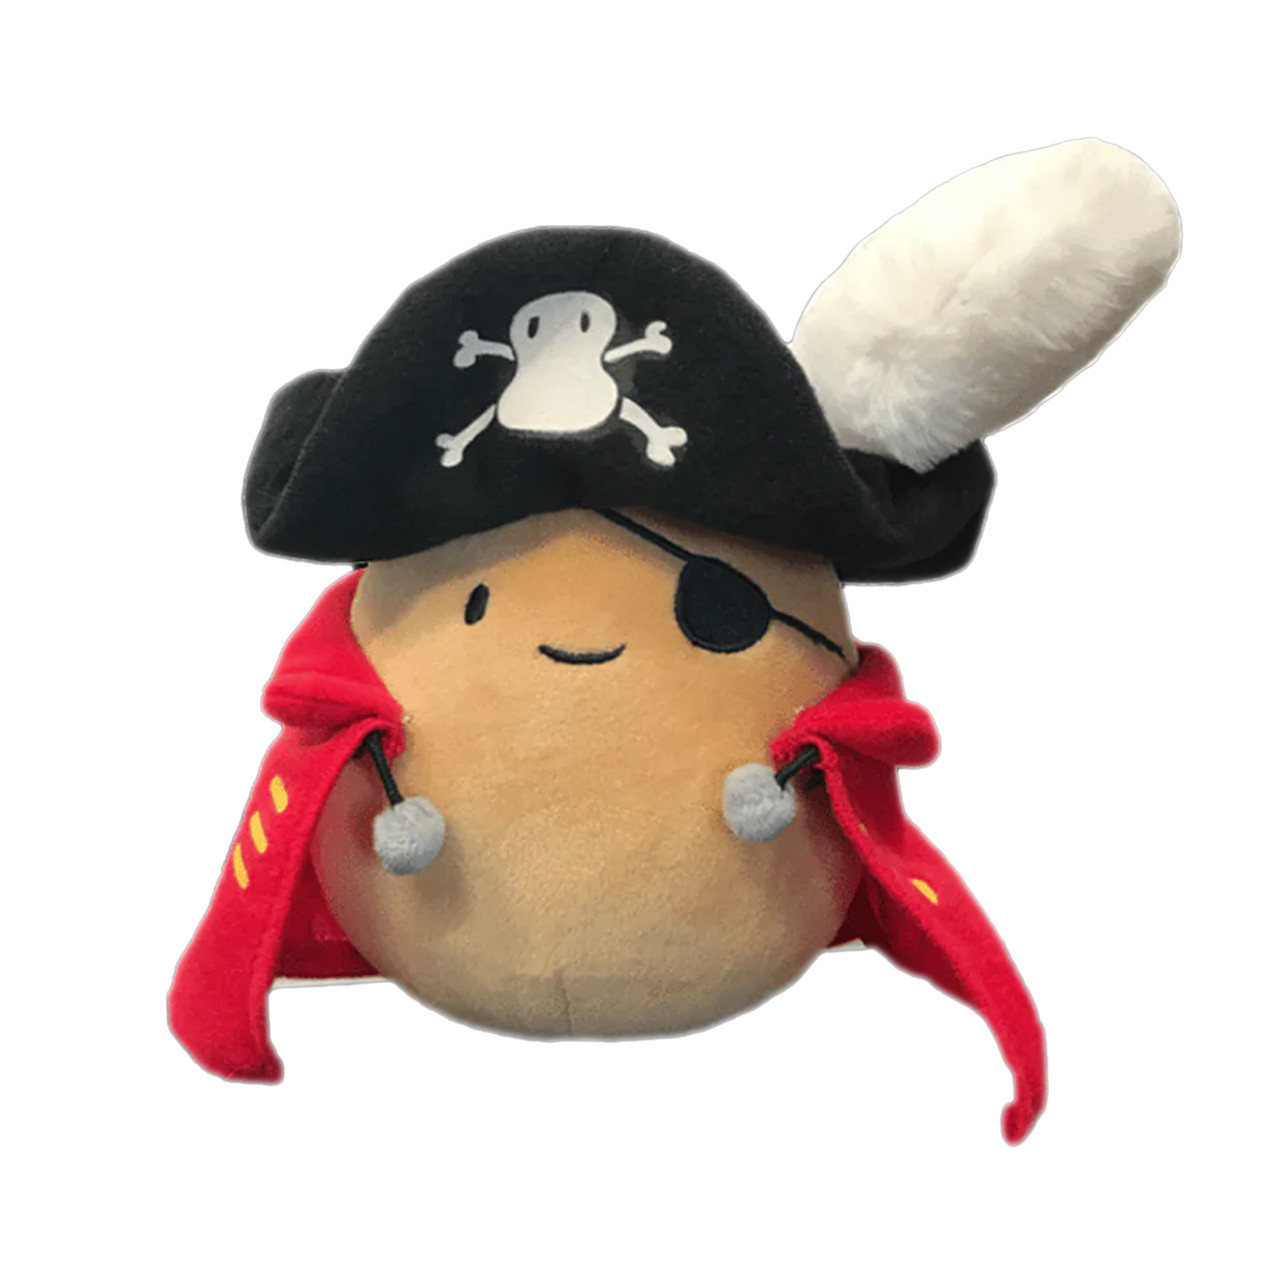 Potato King Plushie Keychain  Best Gift Ideas – Potato Pirates